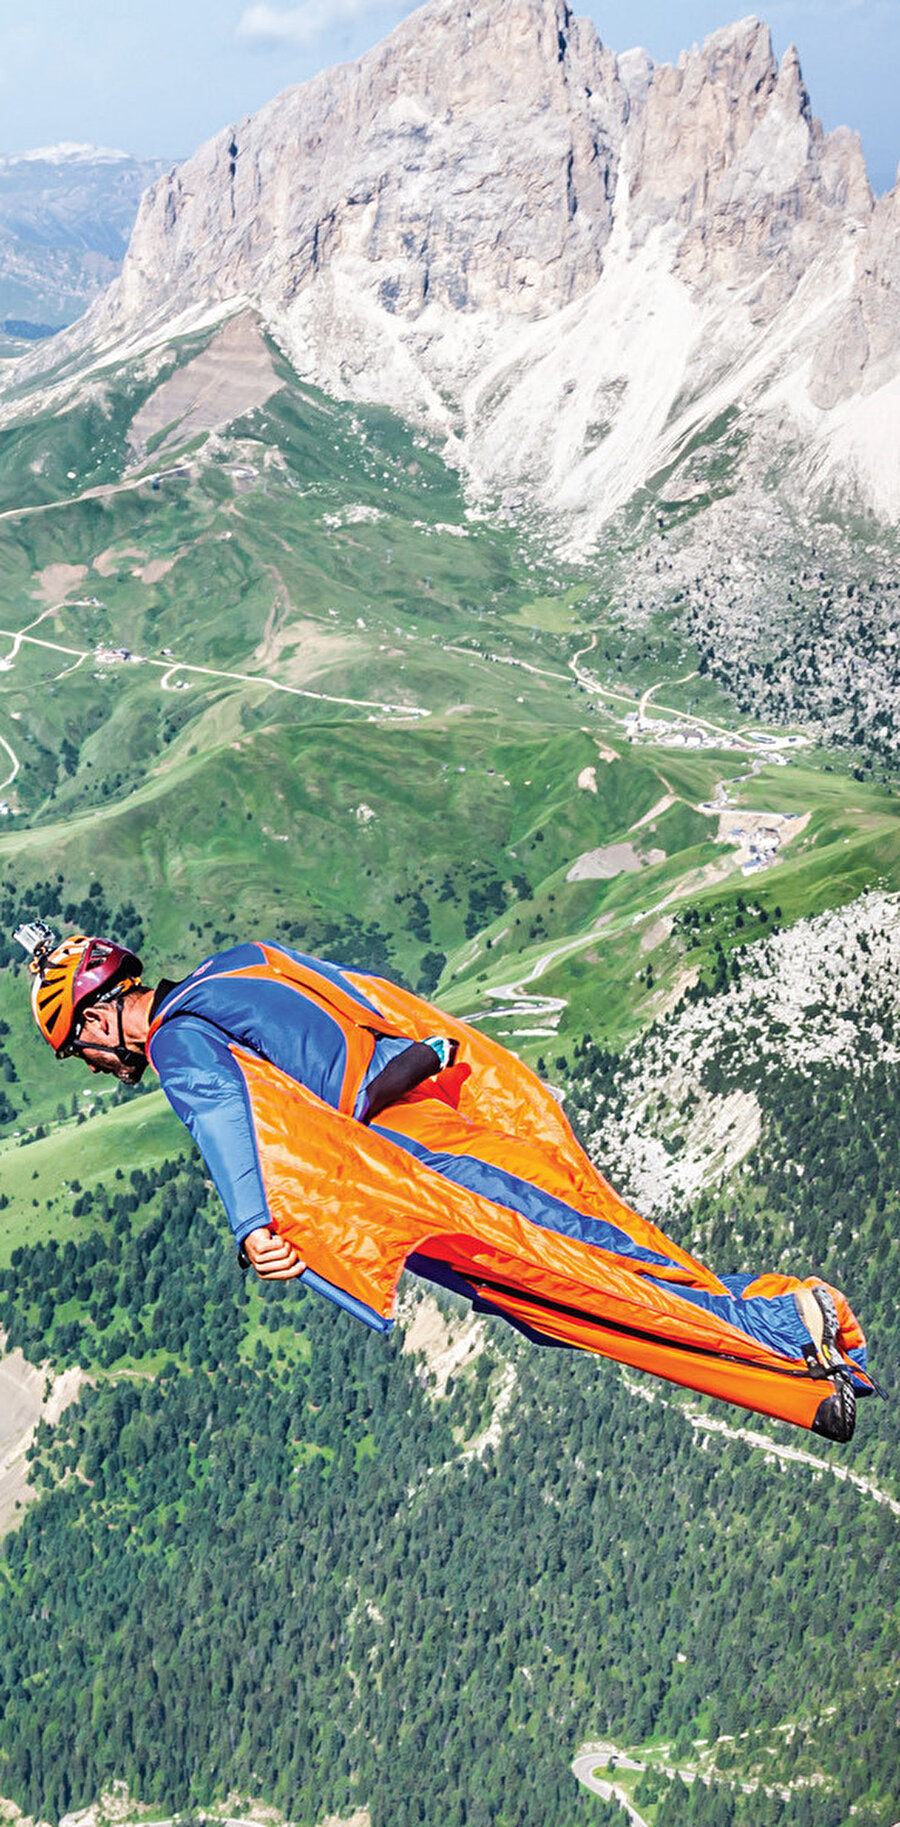 Dünyadaki en uzun Wingsuit uçuş rekoru 9 dakika 6 saniye iken en yüksekten atlama rekoru ise 11,407 metrede.